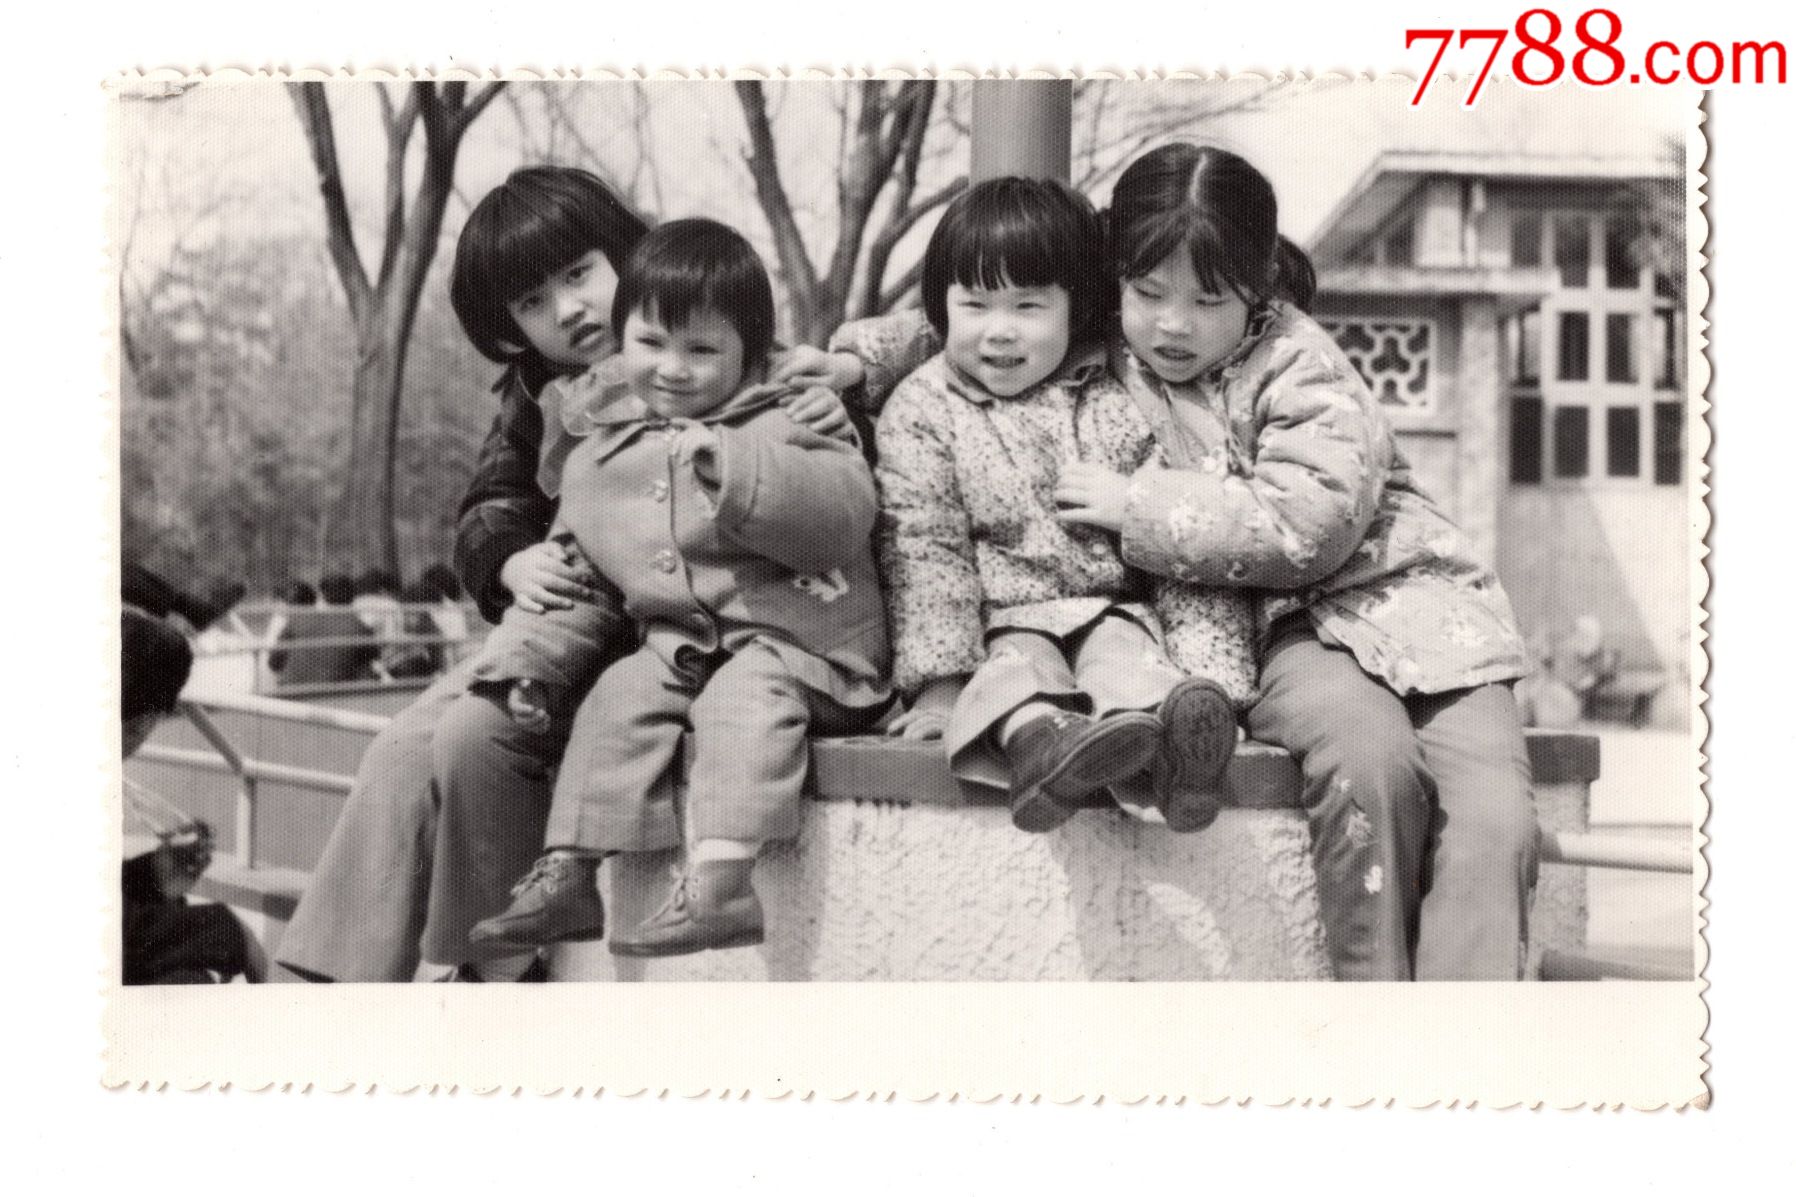 1980年代4个小女孩老照片1385cm